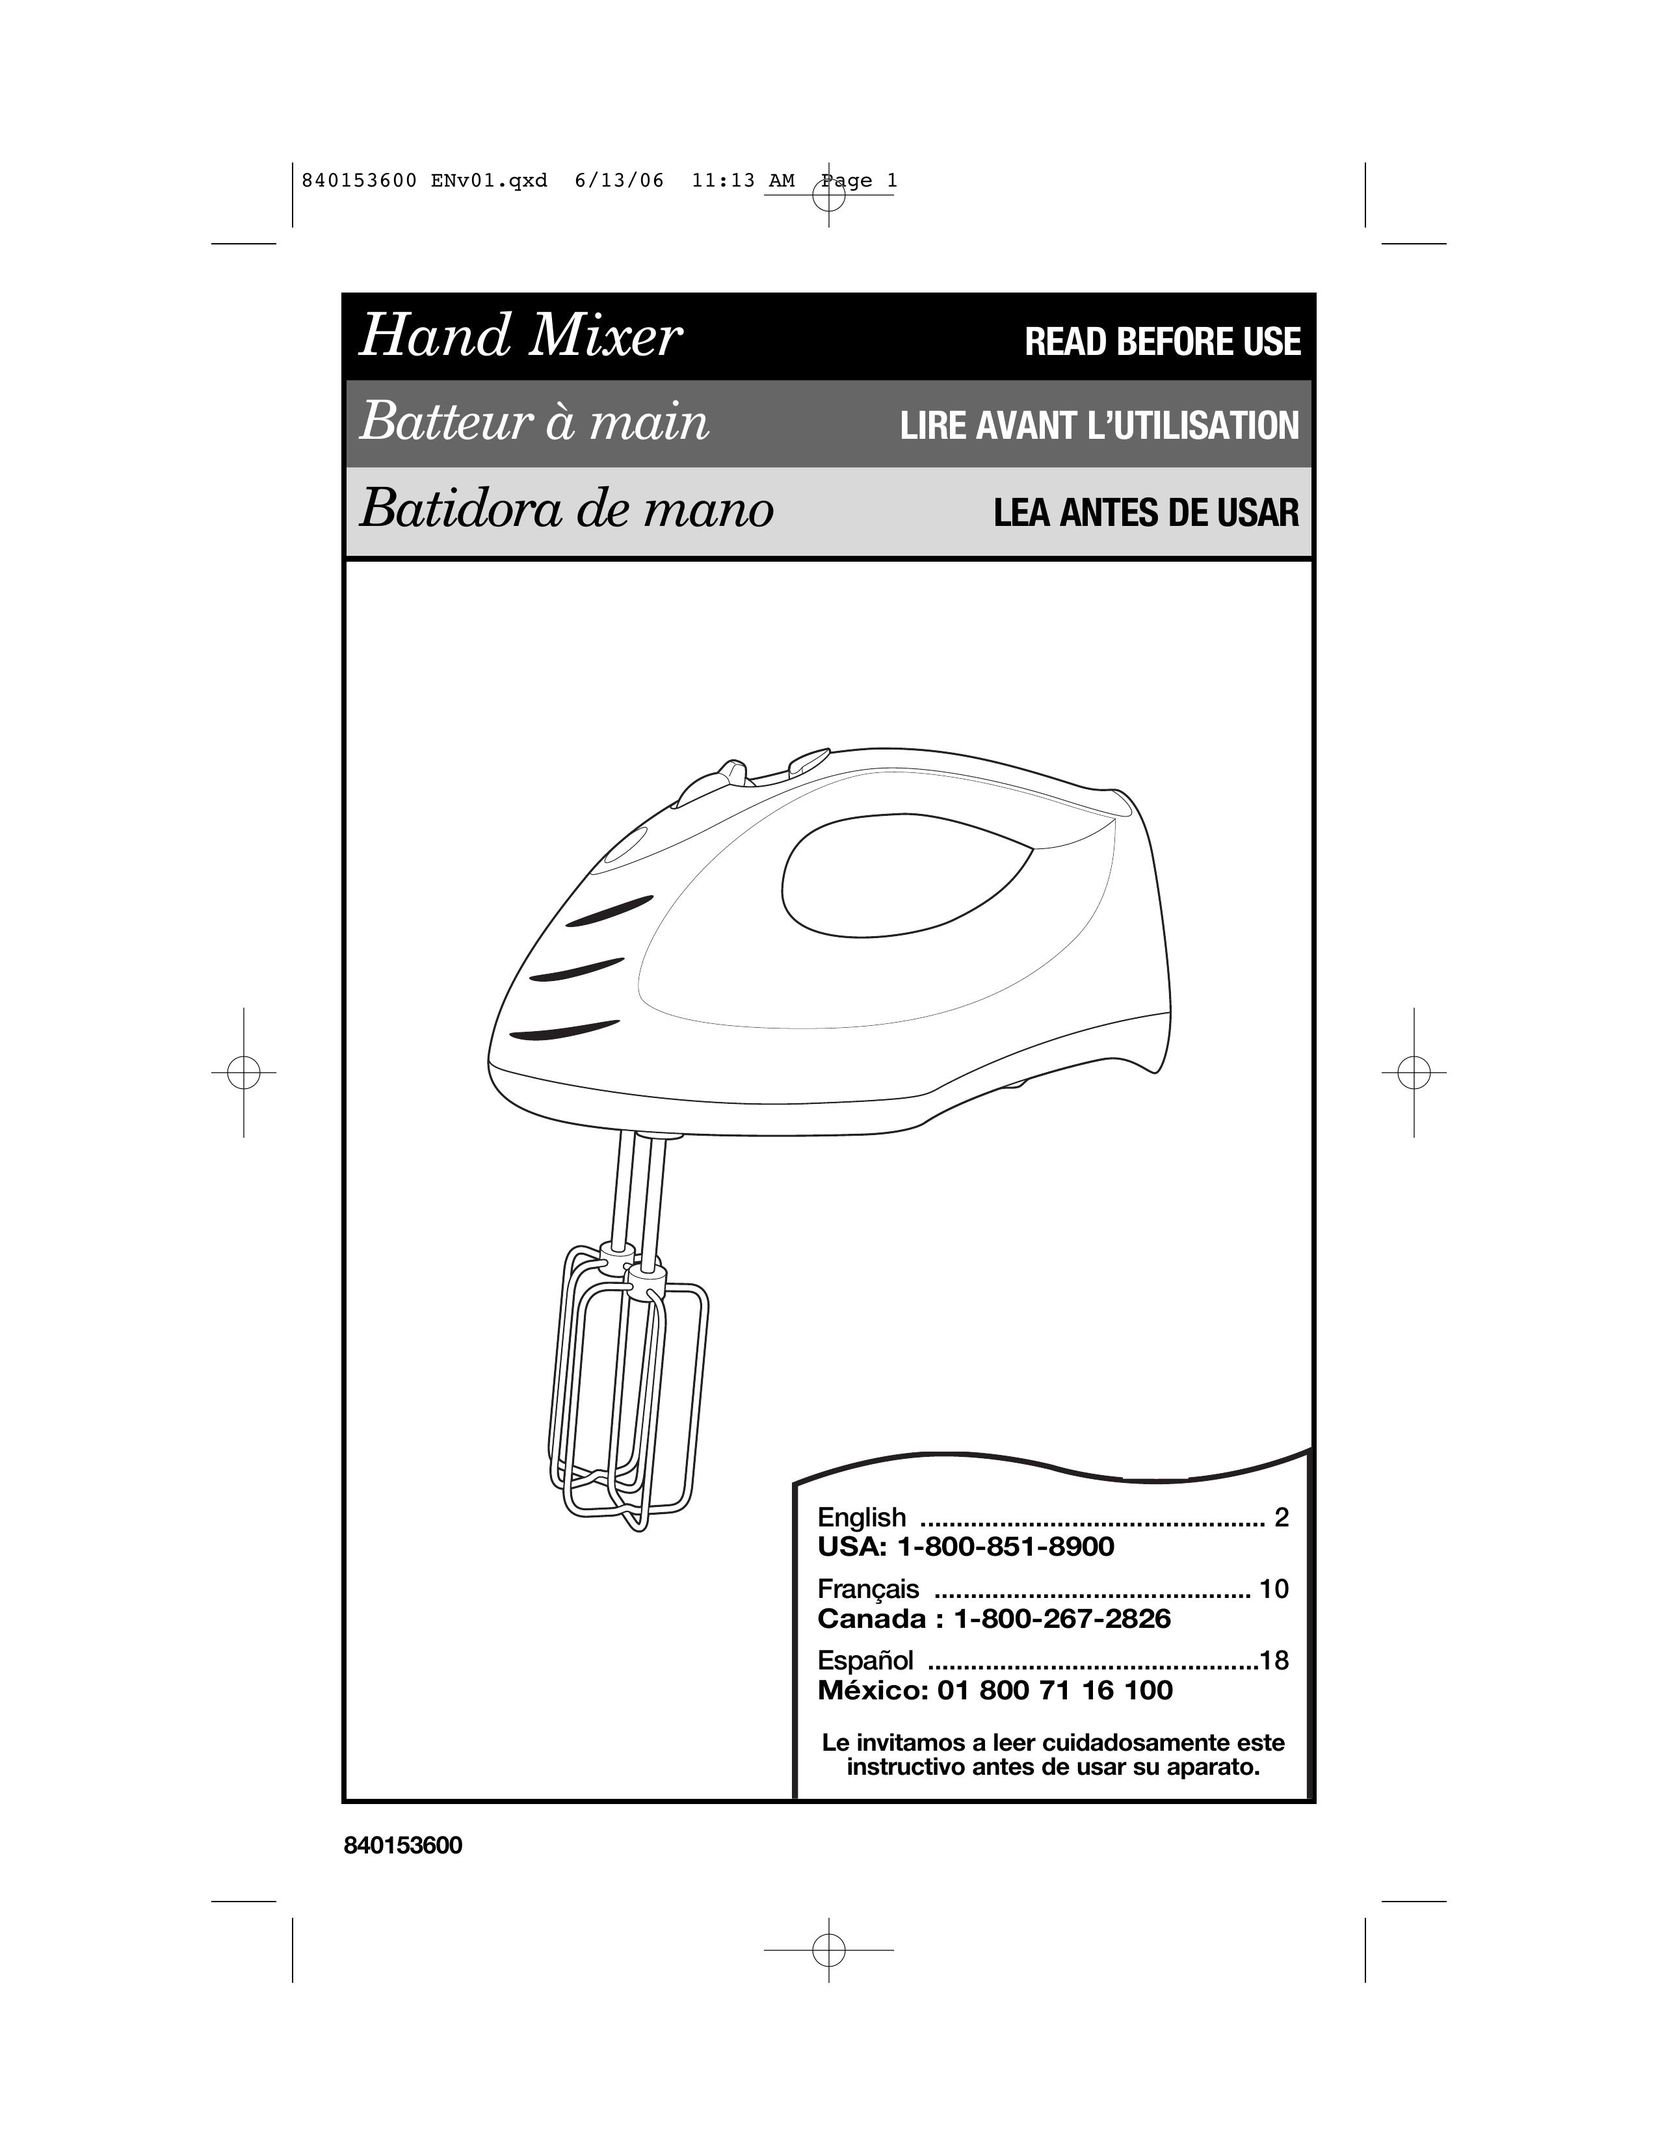 Hamilton Beach 62660 Mixer User Manual